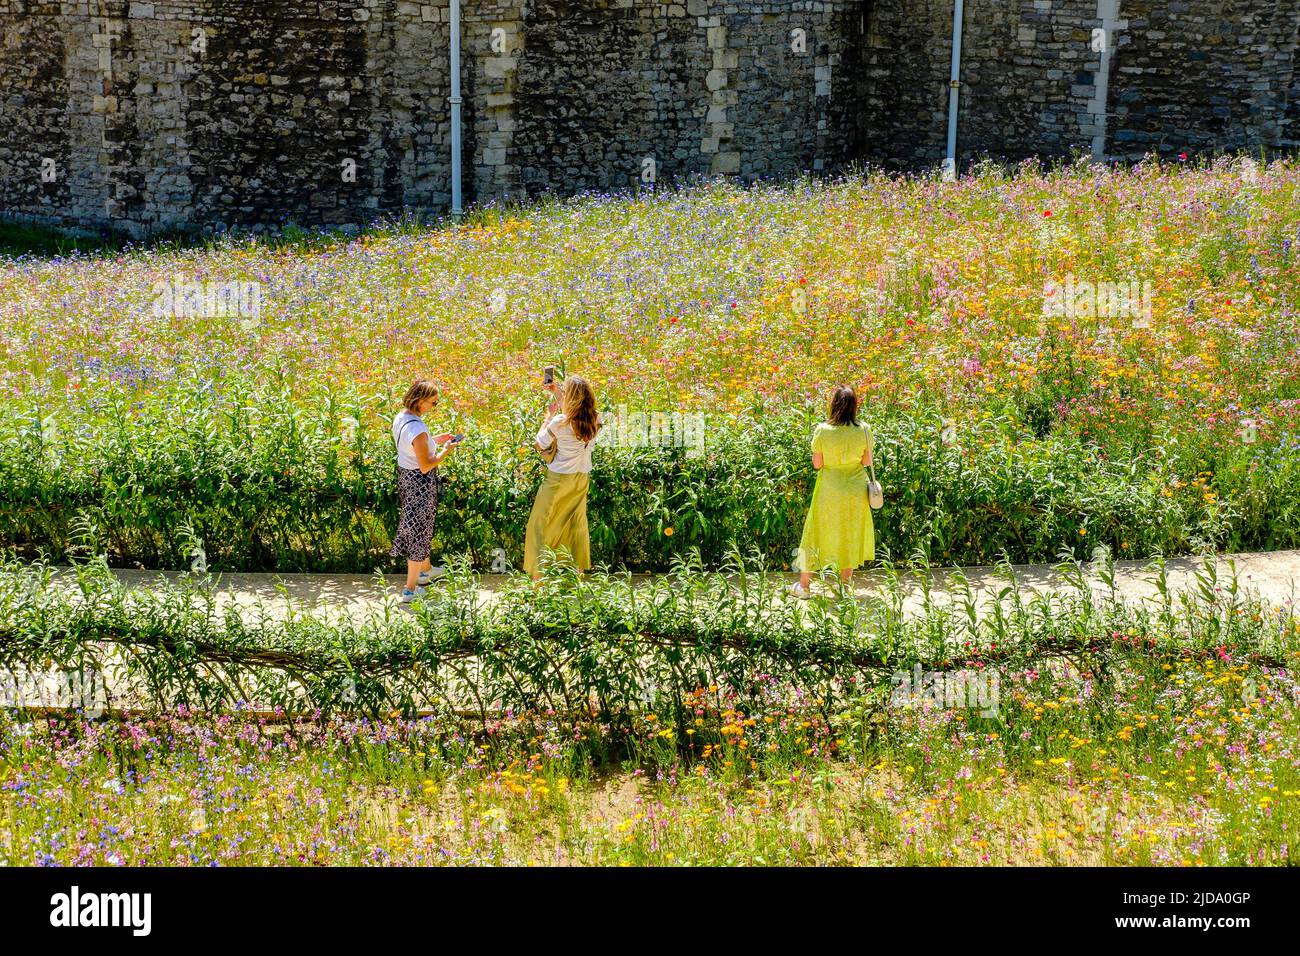 Superbloom en la Torre de Londres; un paisaje de flores silvestres sembradas de más de 20 millones de semillas para celebrar el jubileo de platino de la Reina. Foto de stock